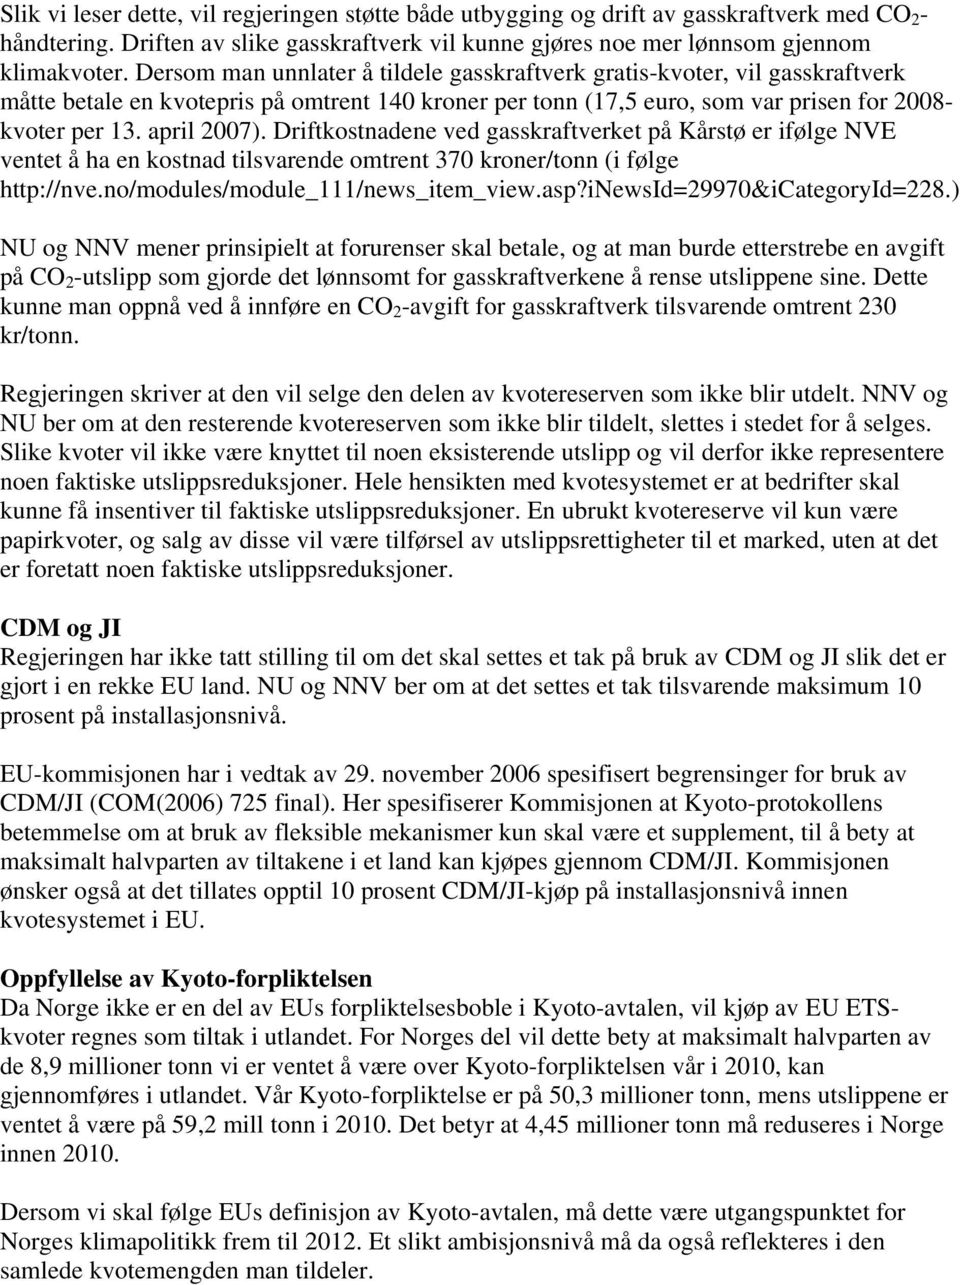 Driftkostnadene ved gasskraftverket på Kårstø er ifølge NVE ventet å ha en kostnad tilsvarende omtrent 370 kroner/tonn (i følge http://nve.no/modules/module_111/news_item_view.asp?